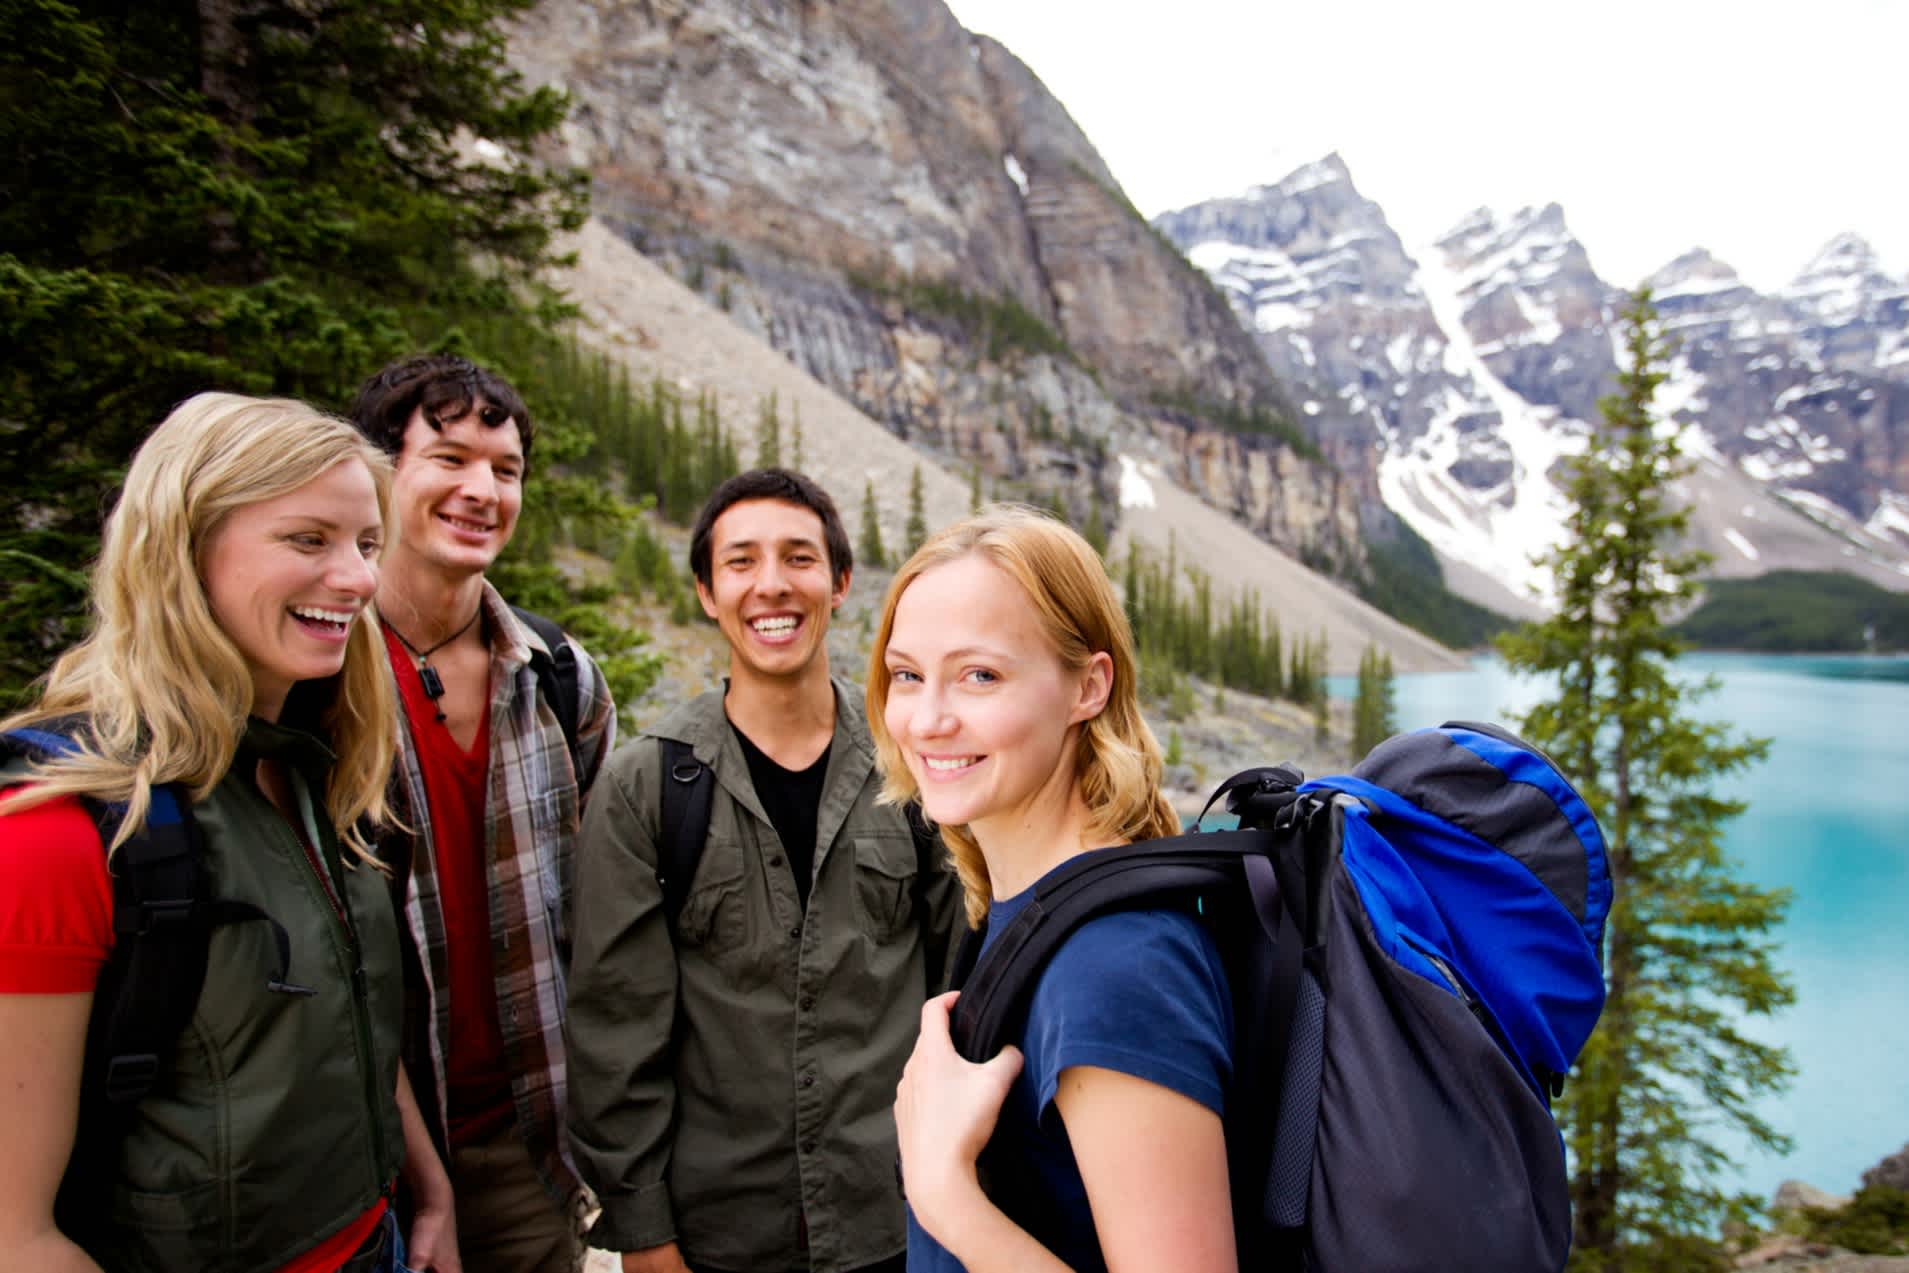 Partez avec votre groupe d'amis pour une randonnée dans les montagnes canadiennes
